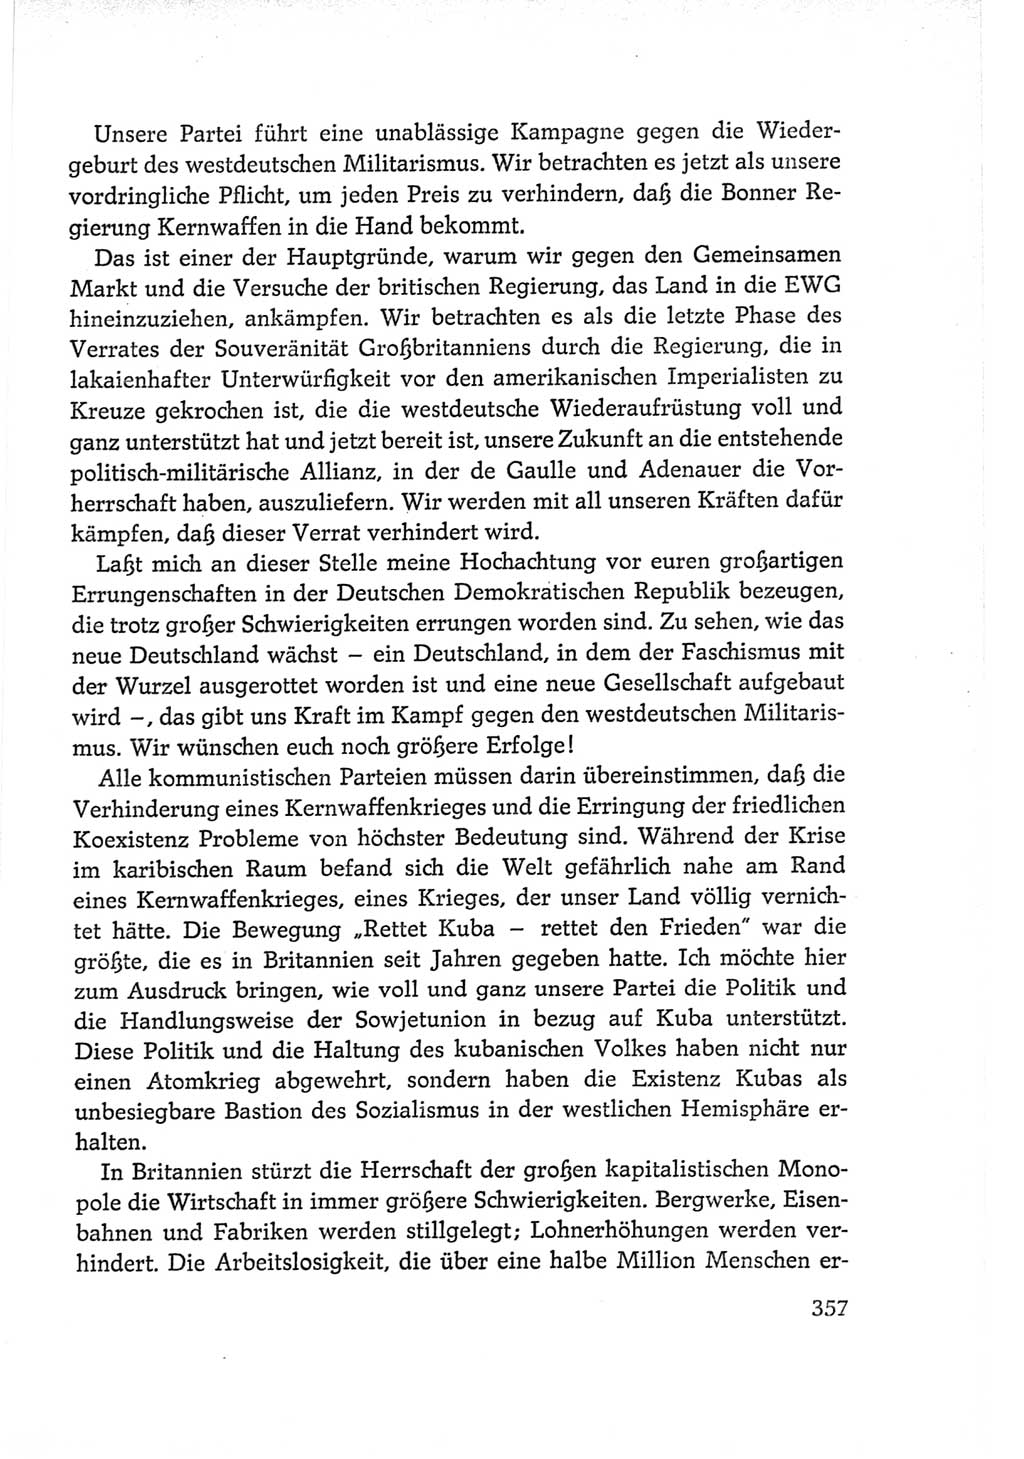 Protokoll der Verhandlungen des Ⅵ. Parteitages der Sozialistischen Einheitspartei Deutschlands (SED) [Deutsche Demokratische Republik (DDR)] 1963, Band Ⅱ, Seite 357 (Prot. Verh. Ⅵ. PT SED DDR 1963, Bd. Ⅱ, S. 357)